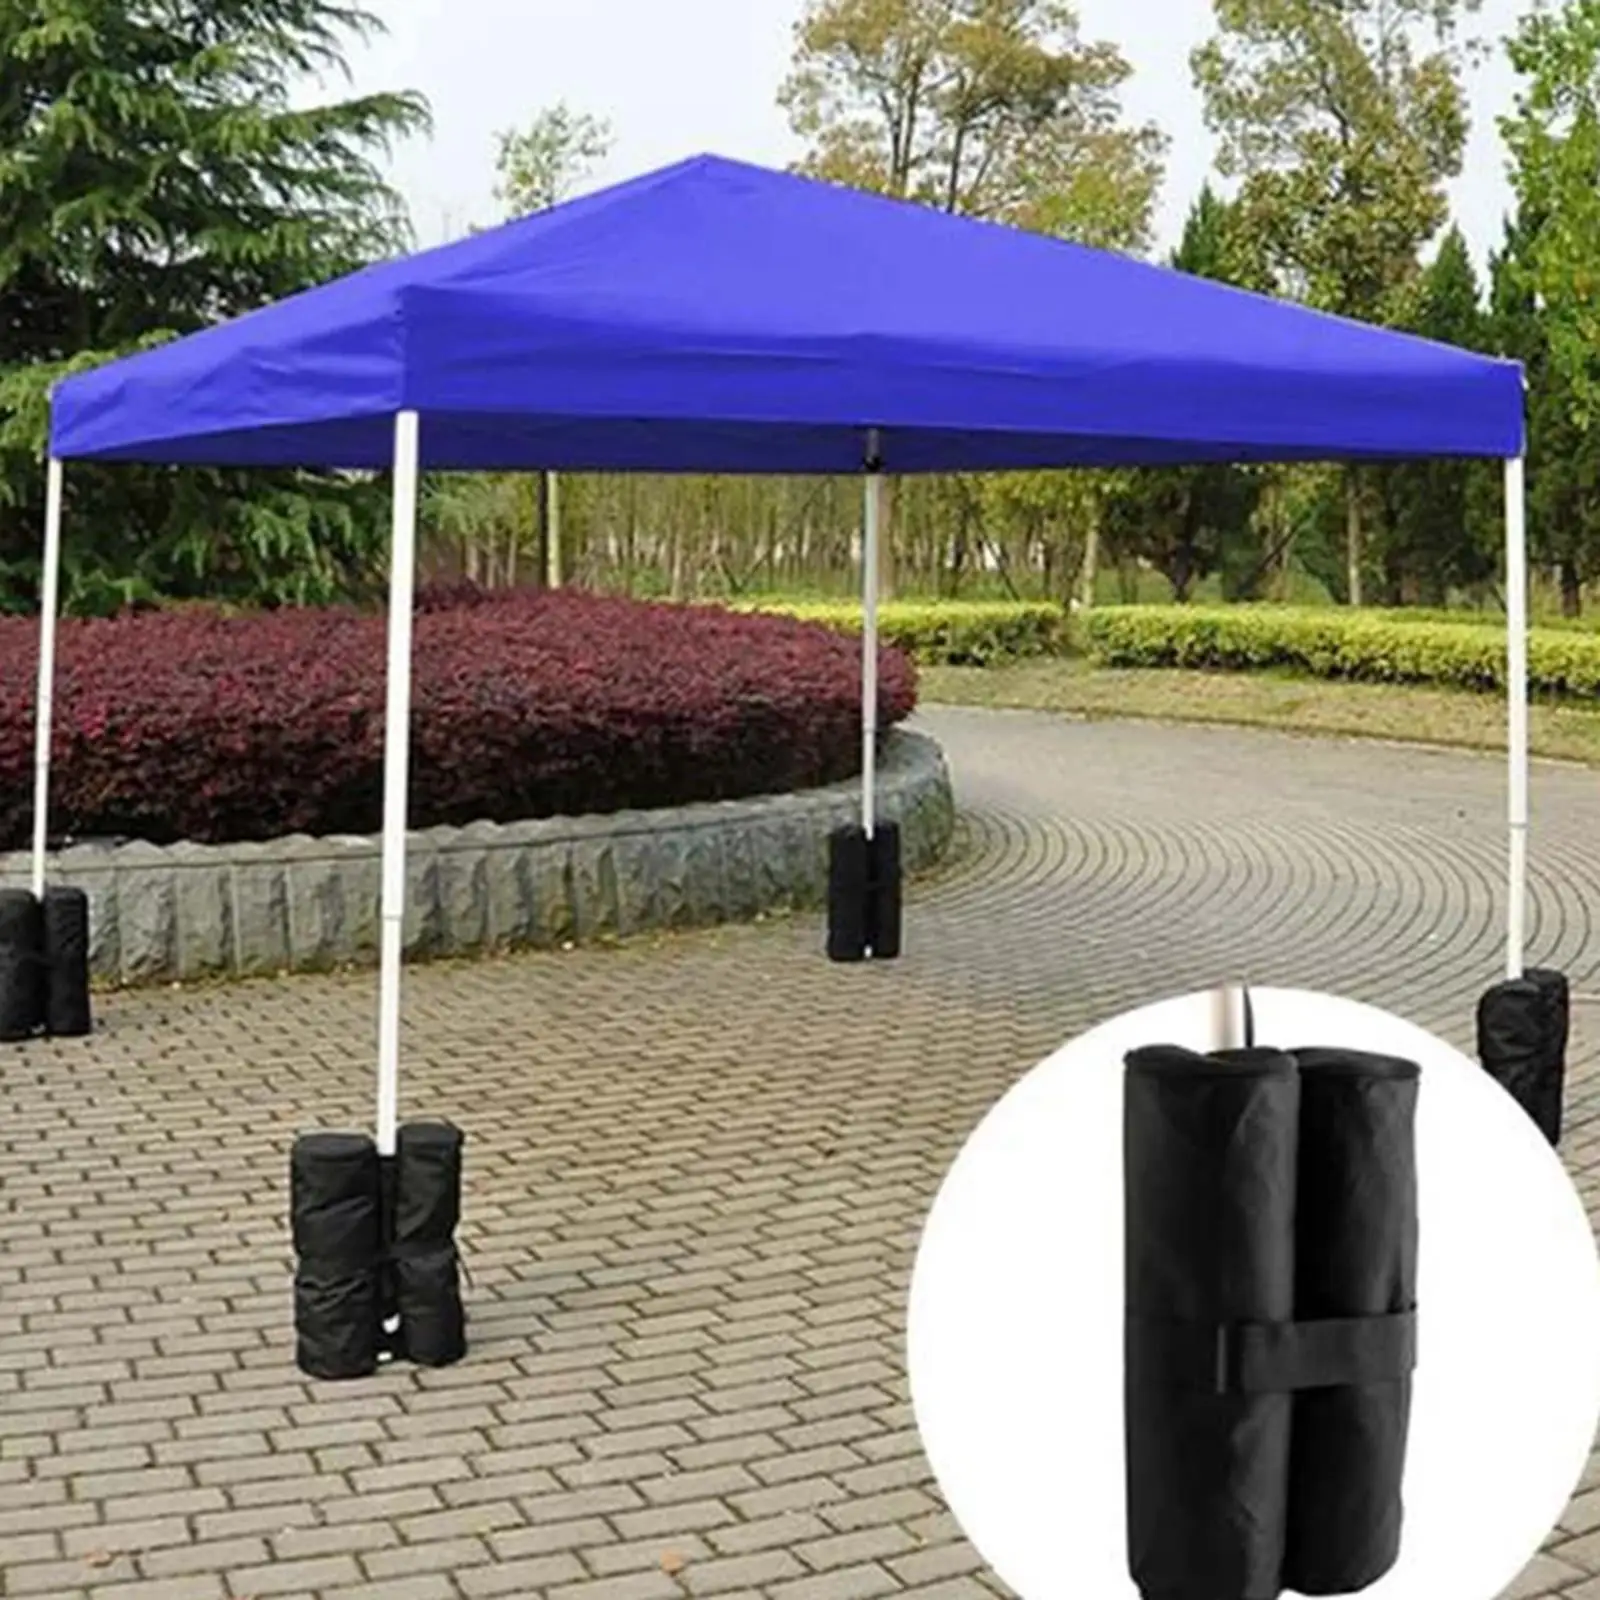 Parasol Bases, Portable Detachable Wind-Fixing  for Outdoor Beach Garden Parasol Umbrella